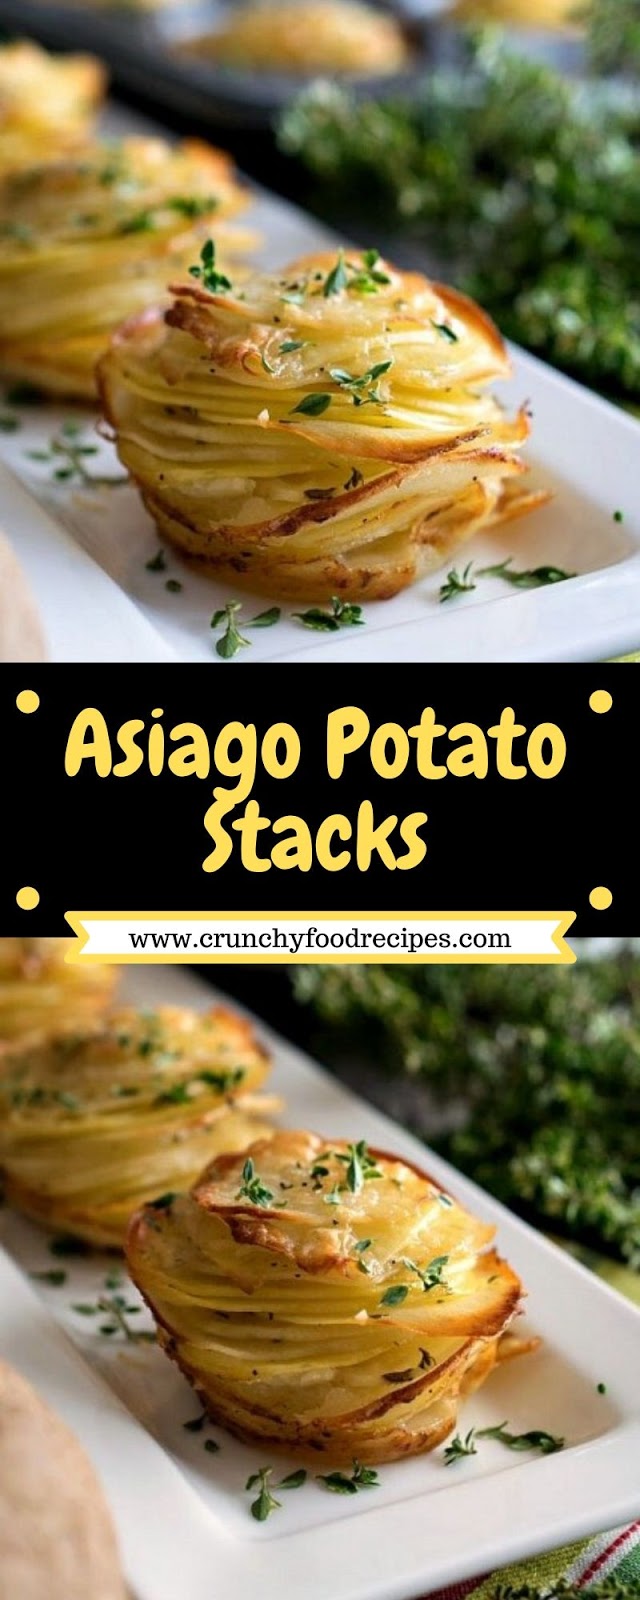 Asiago Potato Stacks